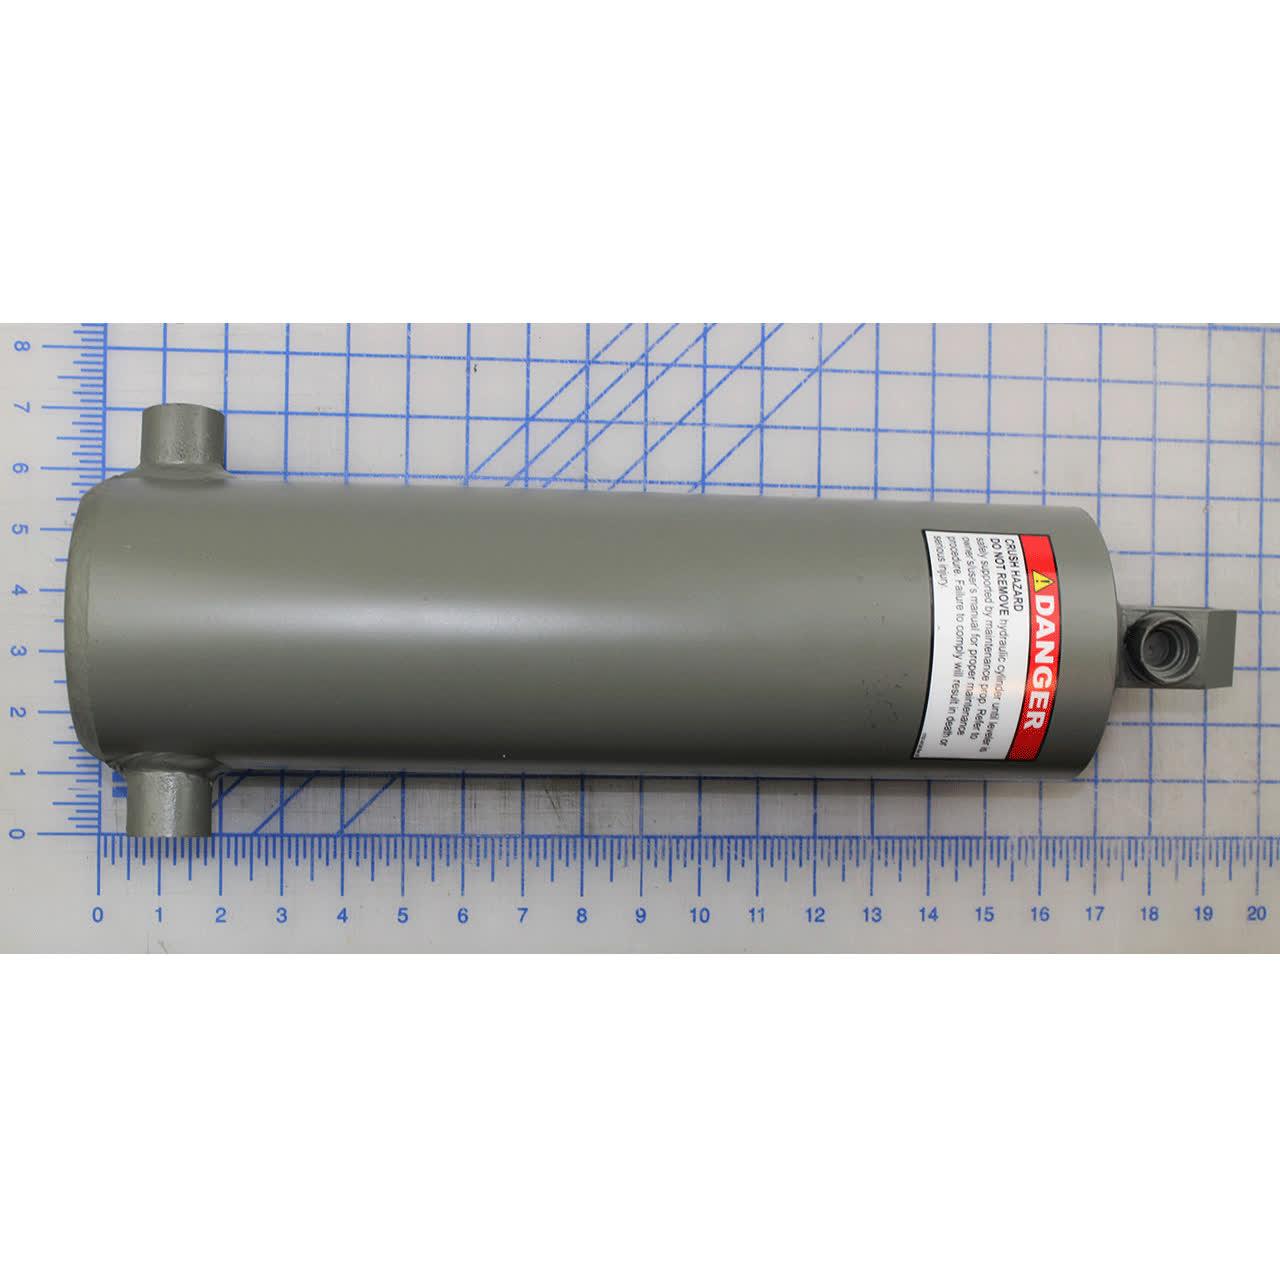 0525-0043 Cylinder, Platform, 15-1/2 In. (394 Mm) Barrel Length - Poweramp